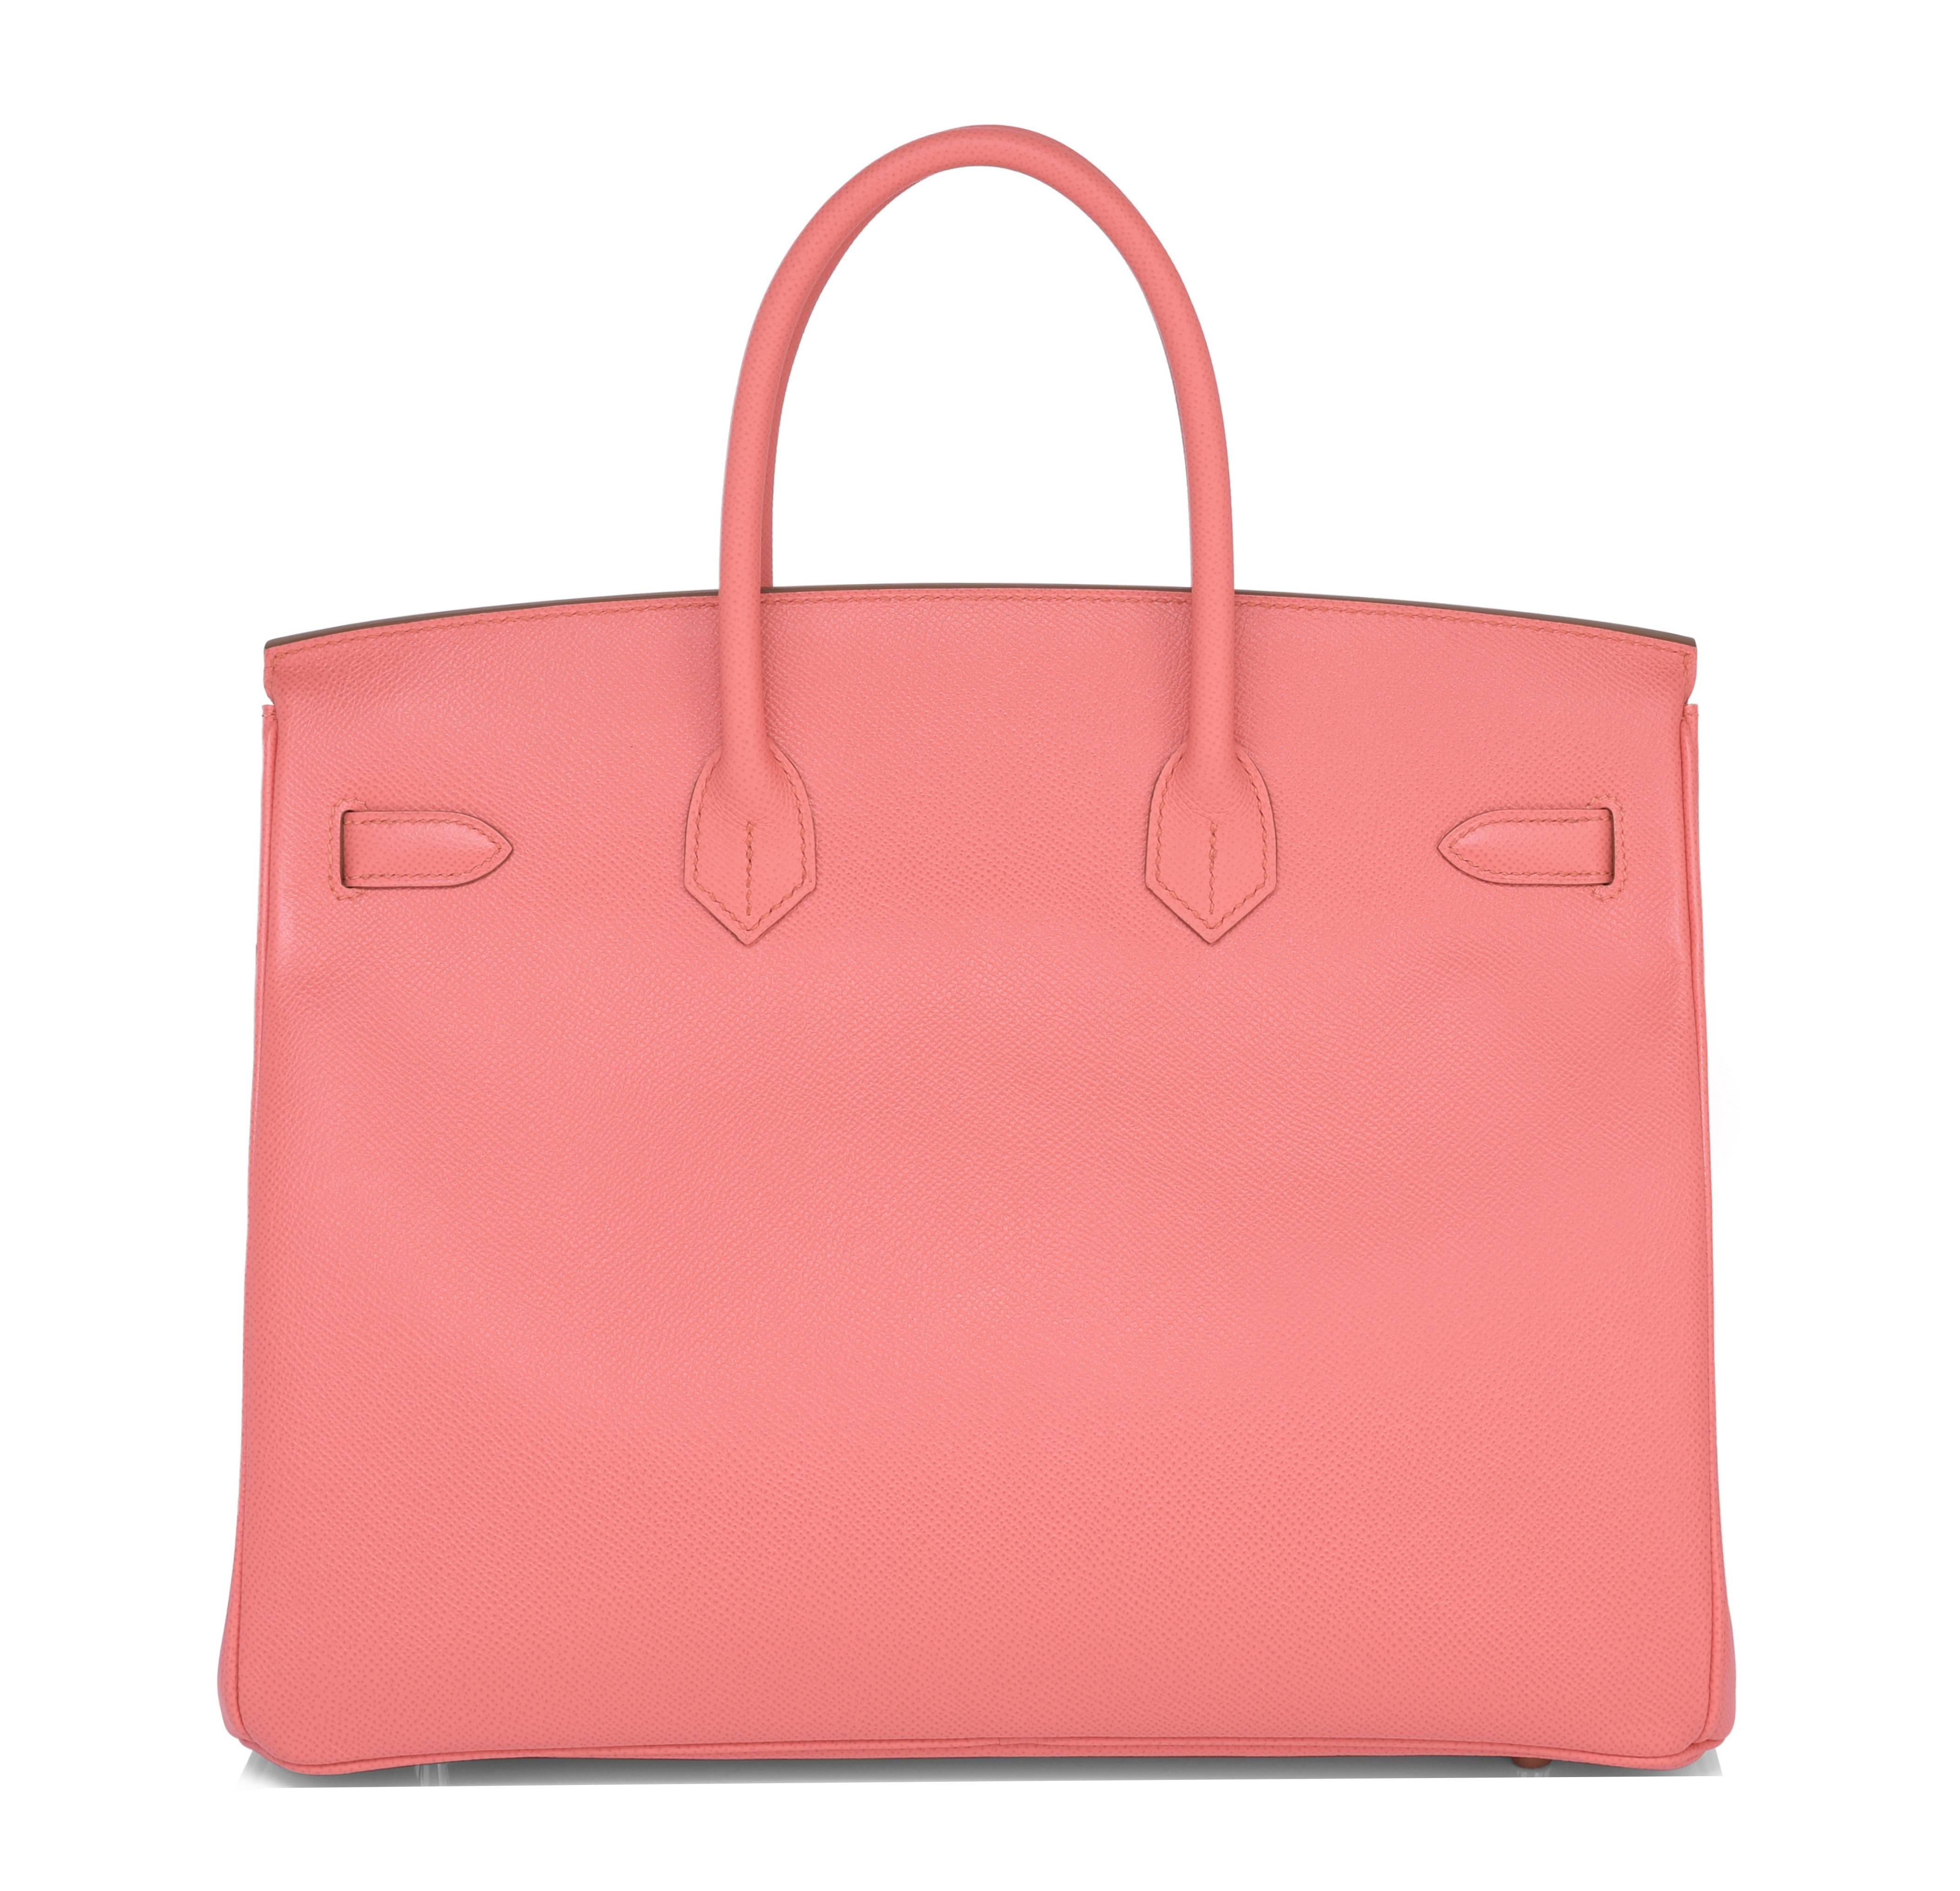 peach colour handbags